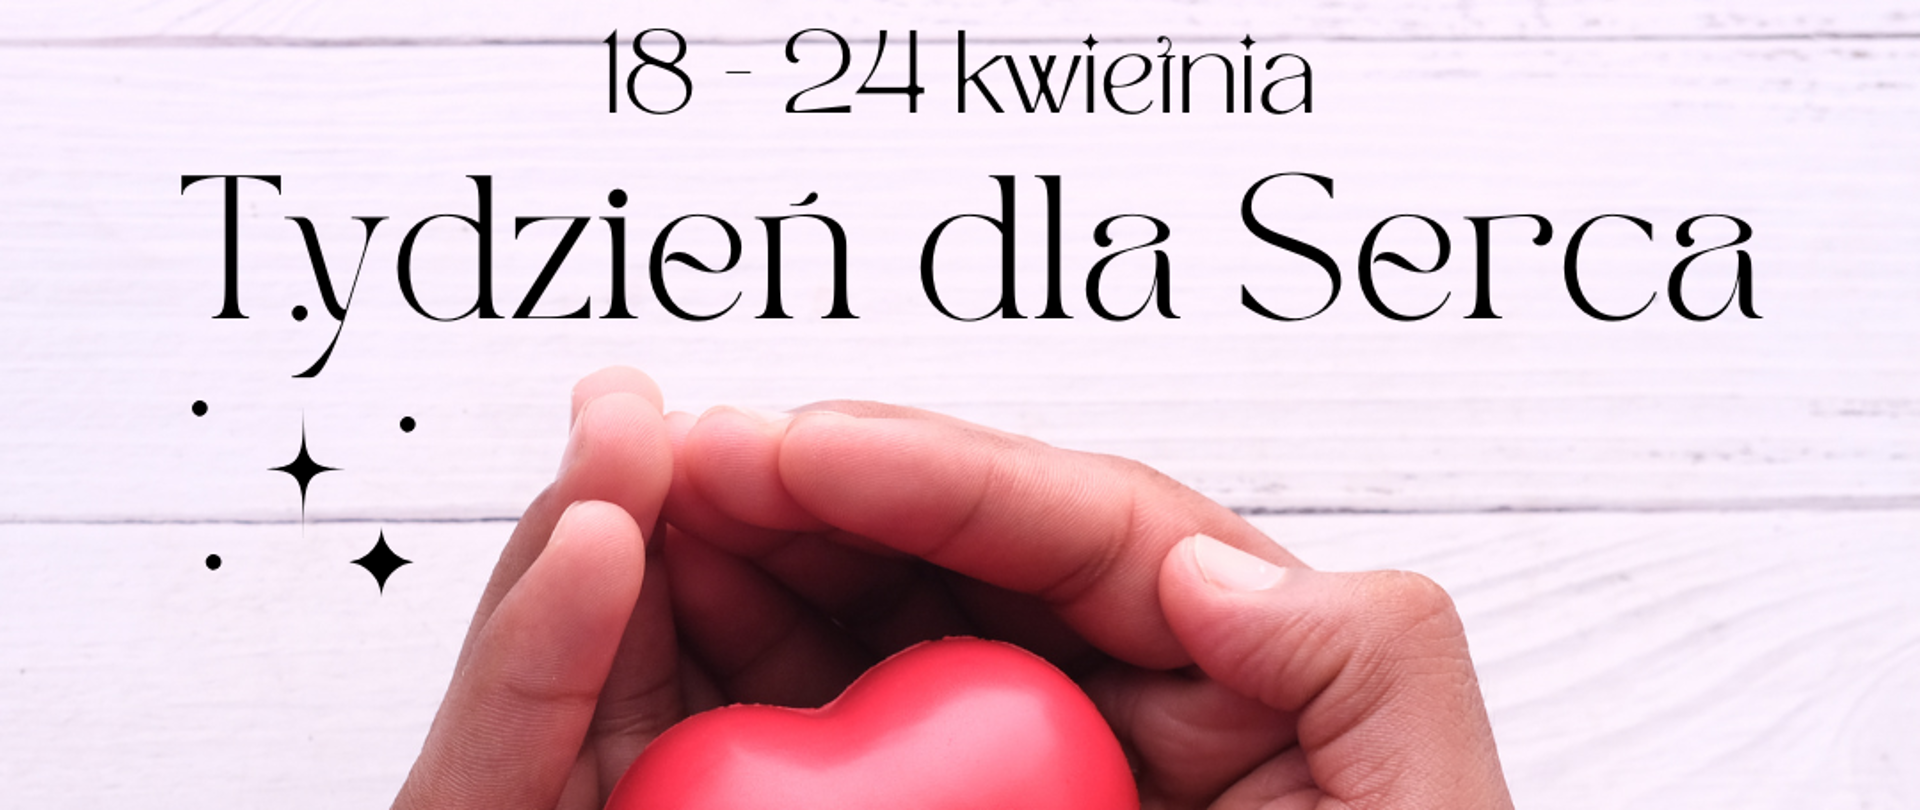 Plakat kampanii Tydzień dla Serca.